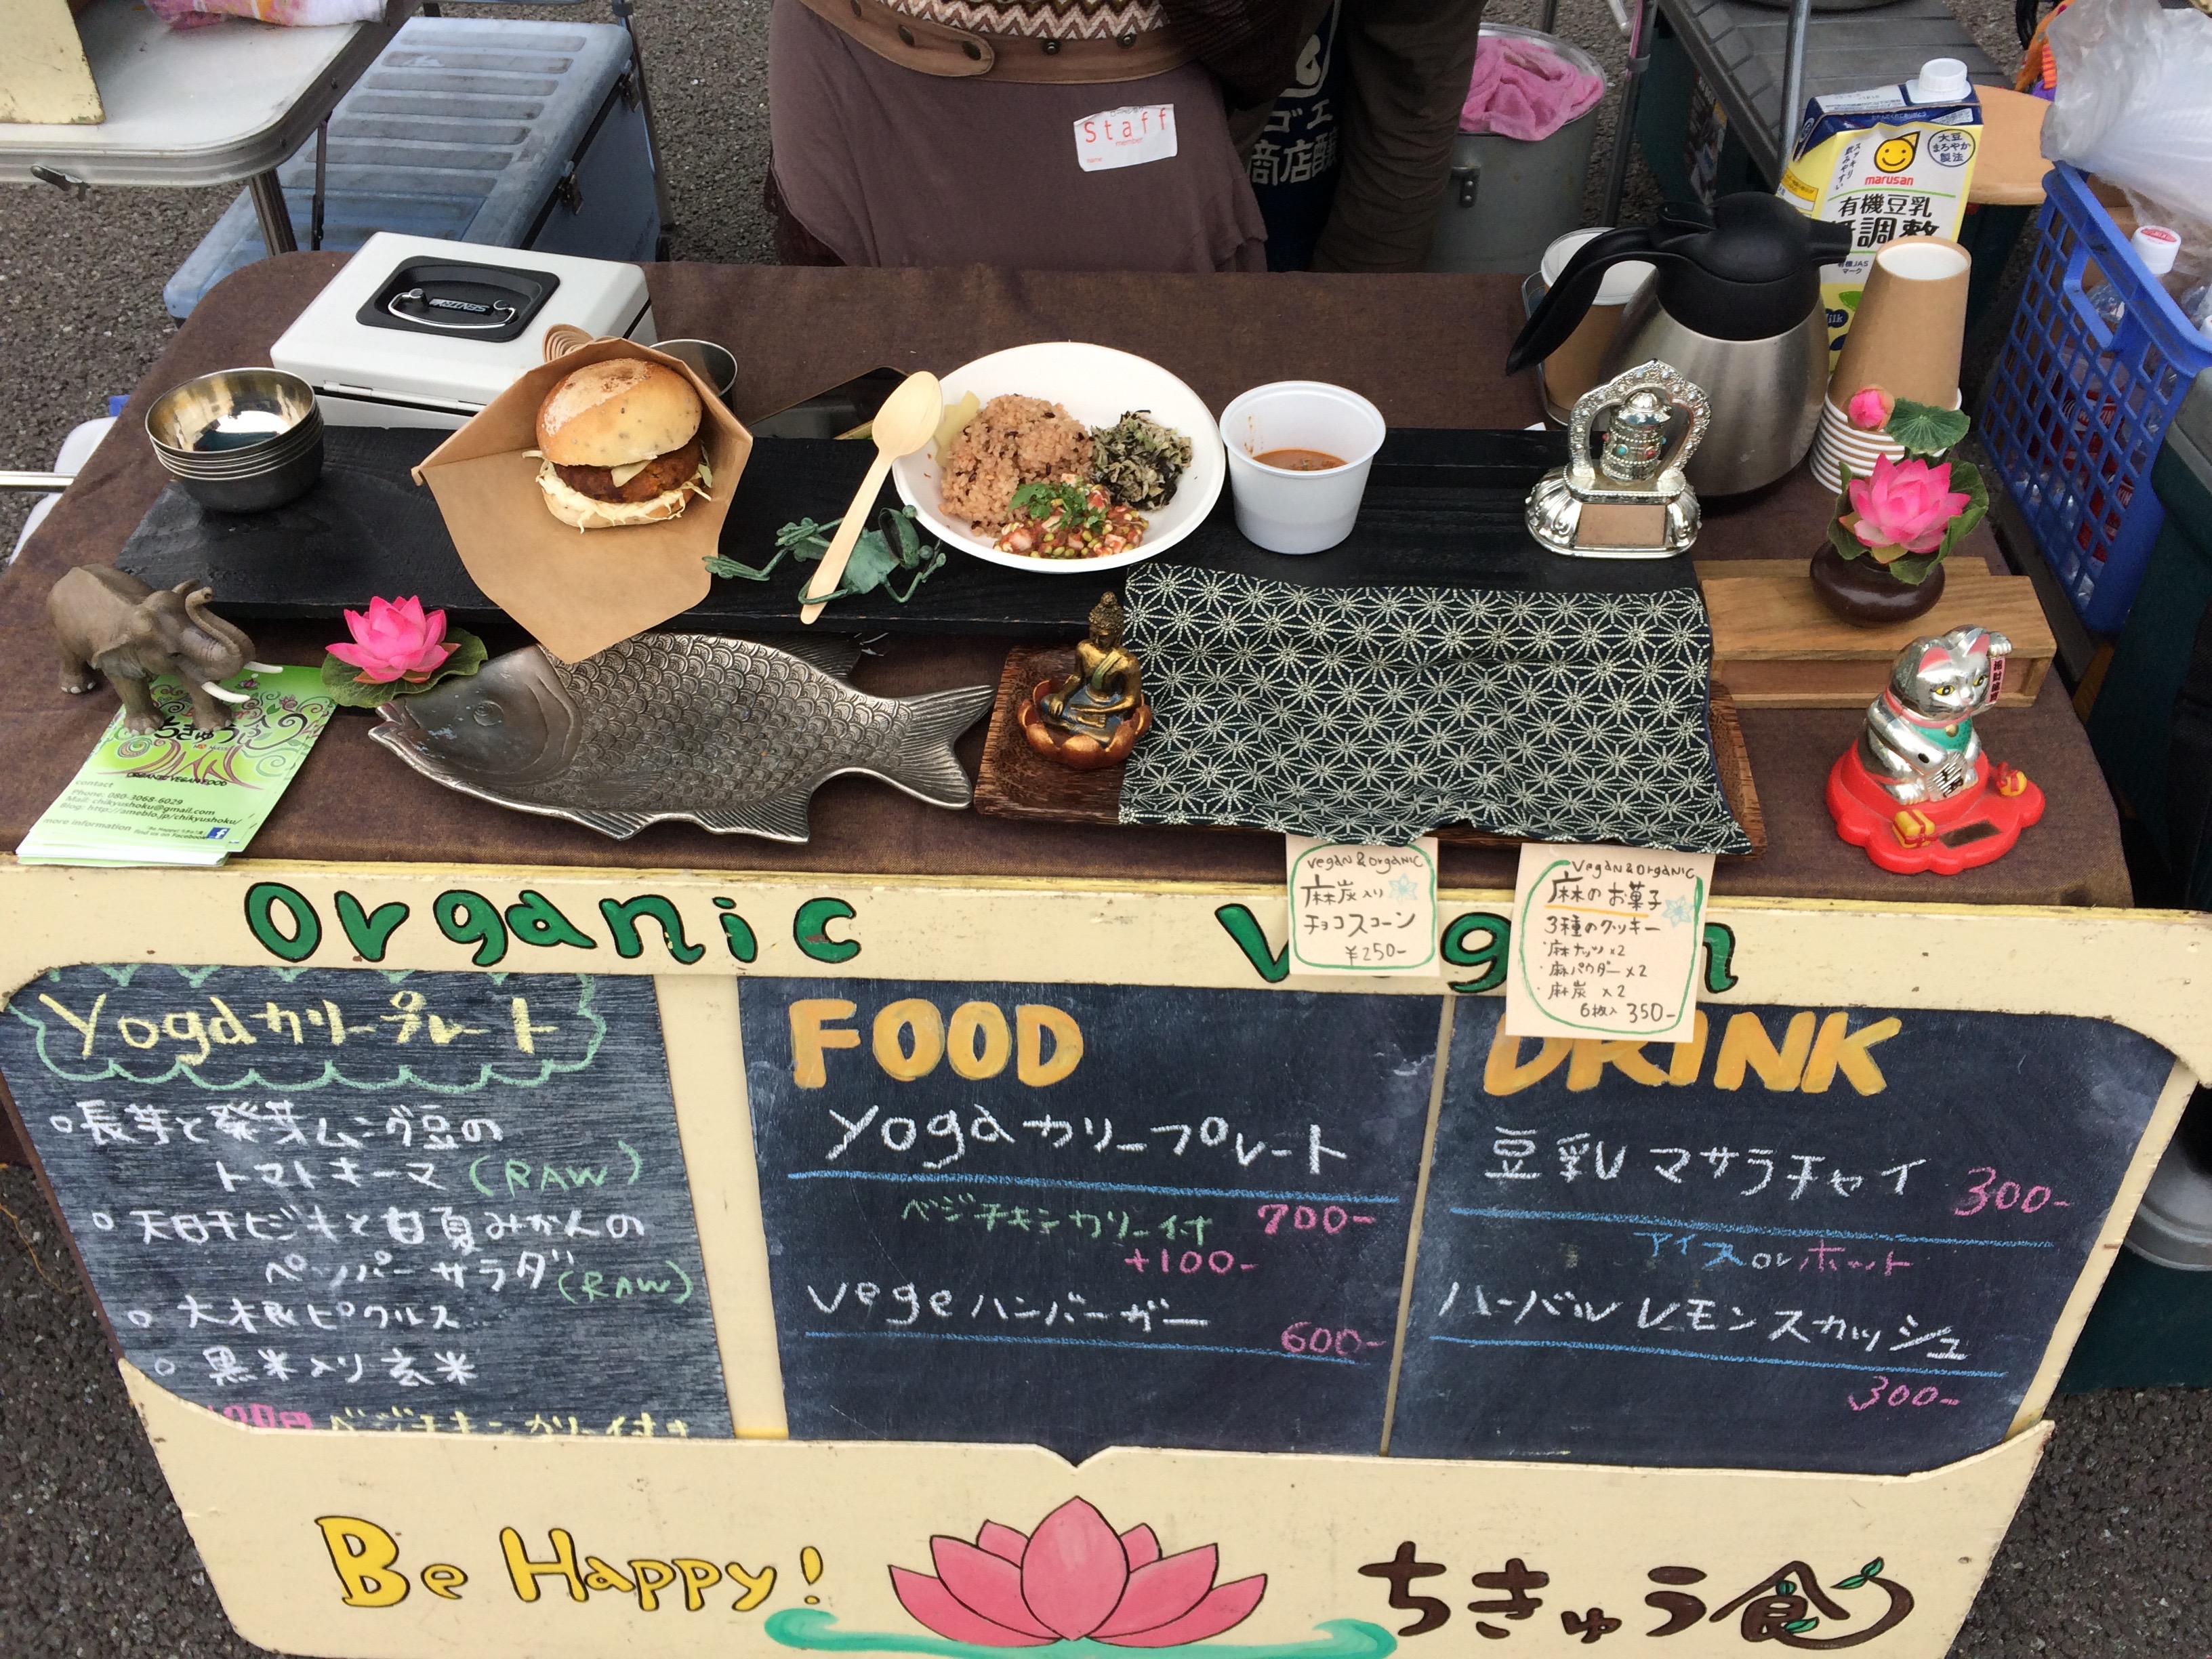 Osakaローベジ祭り2015summerちきゅう食出店ブース